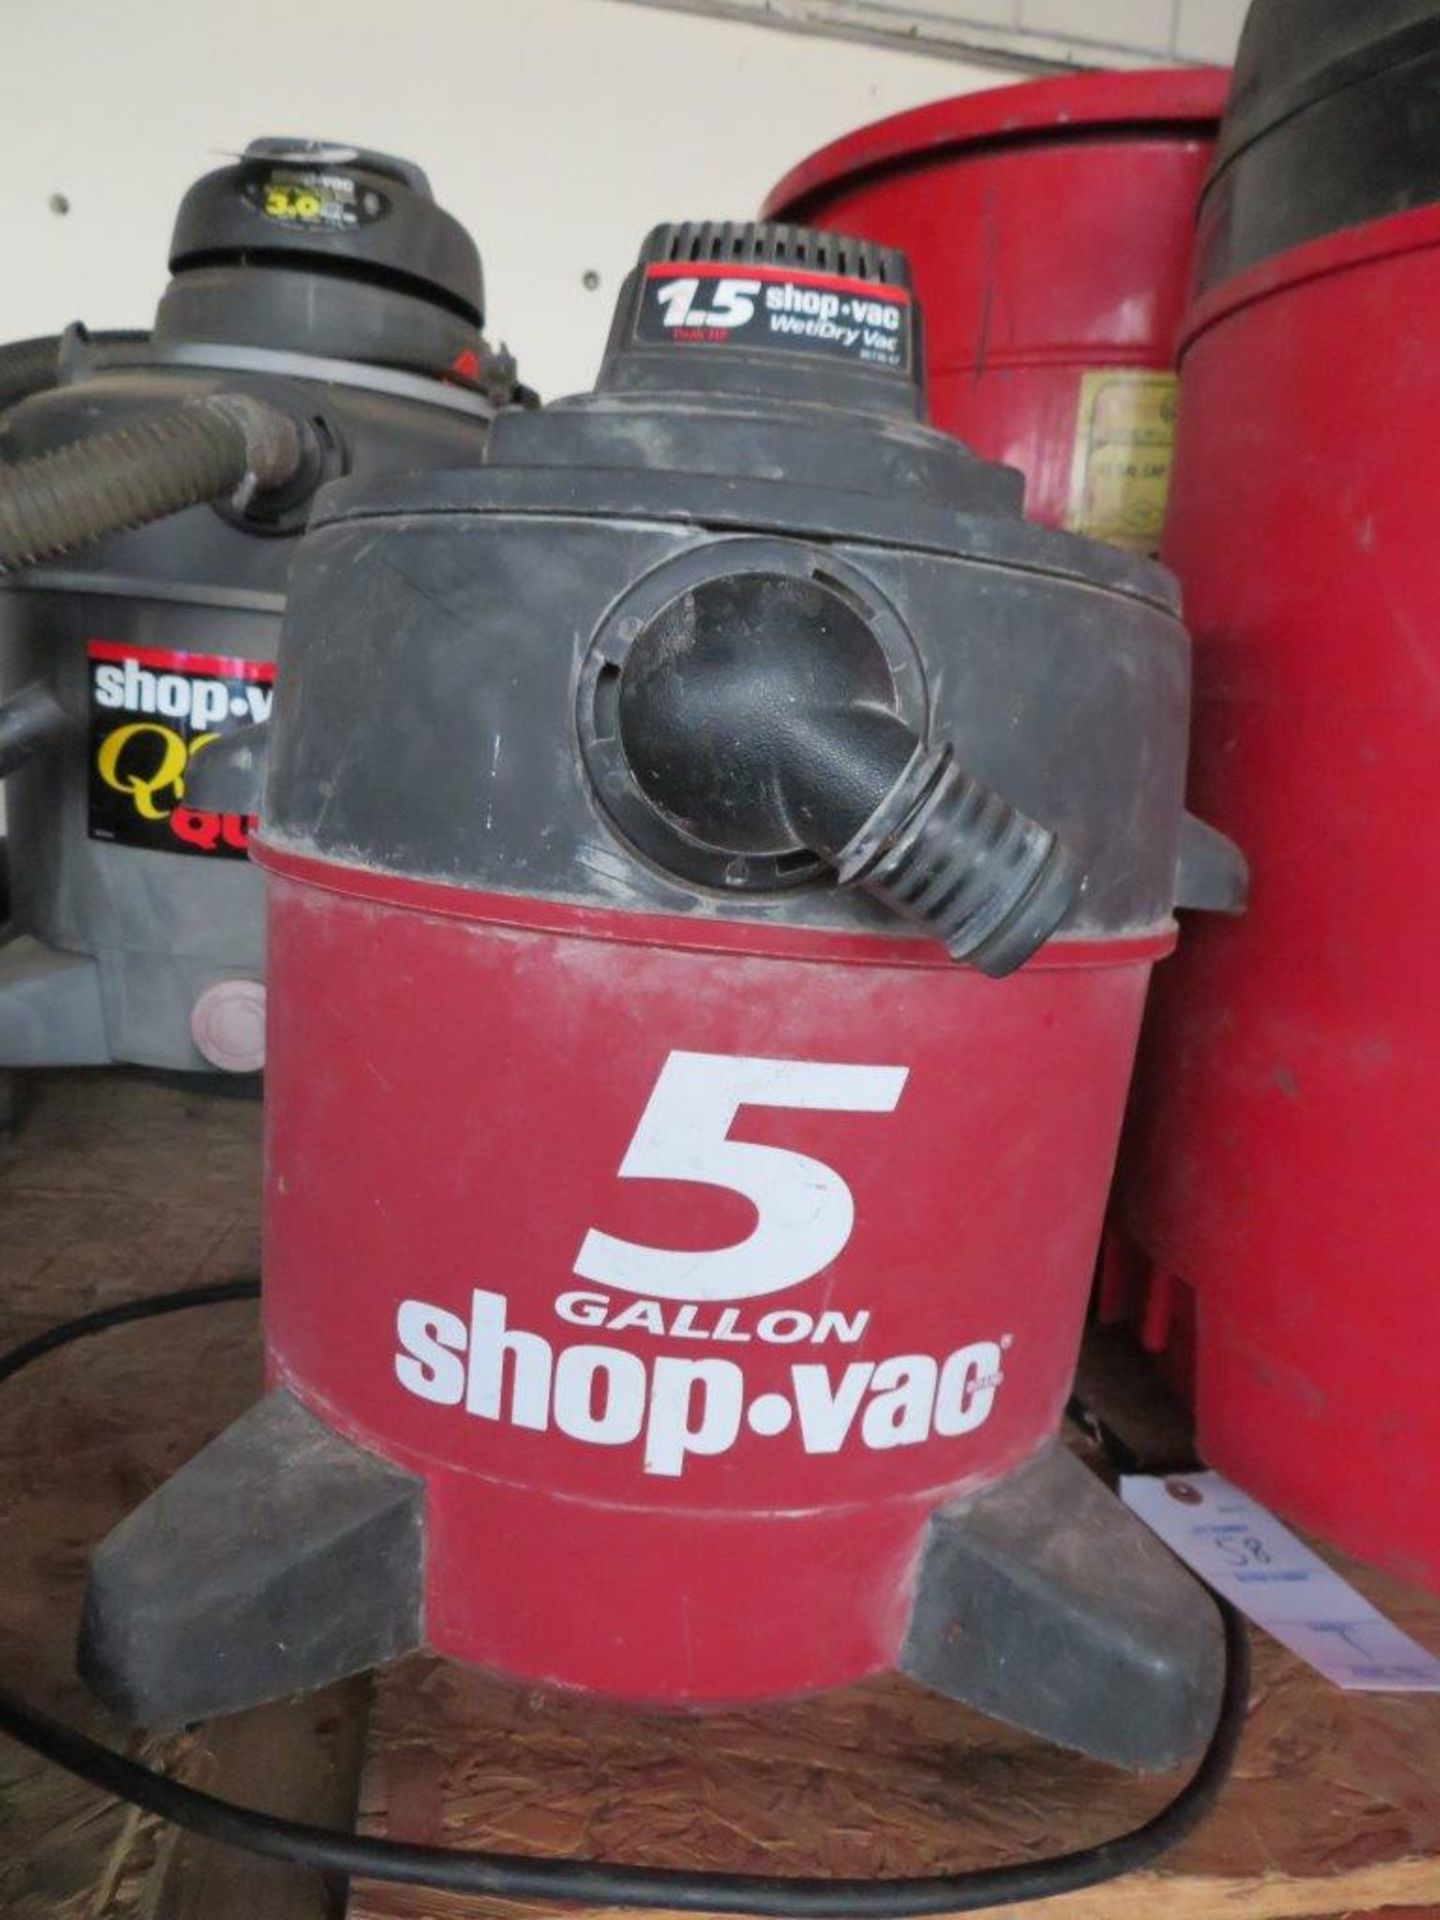 5 Gallon Shop-Vac